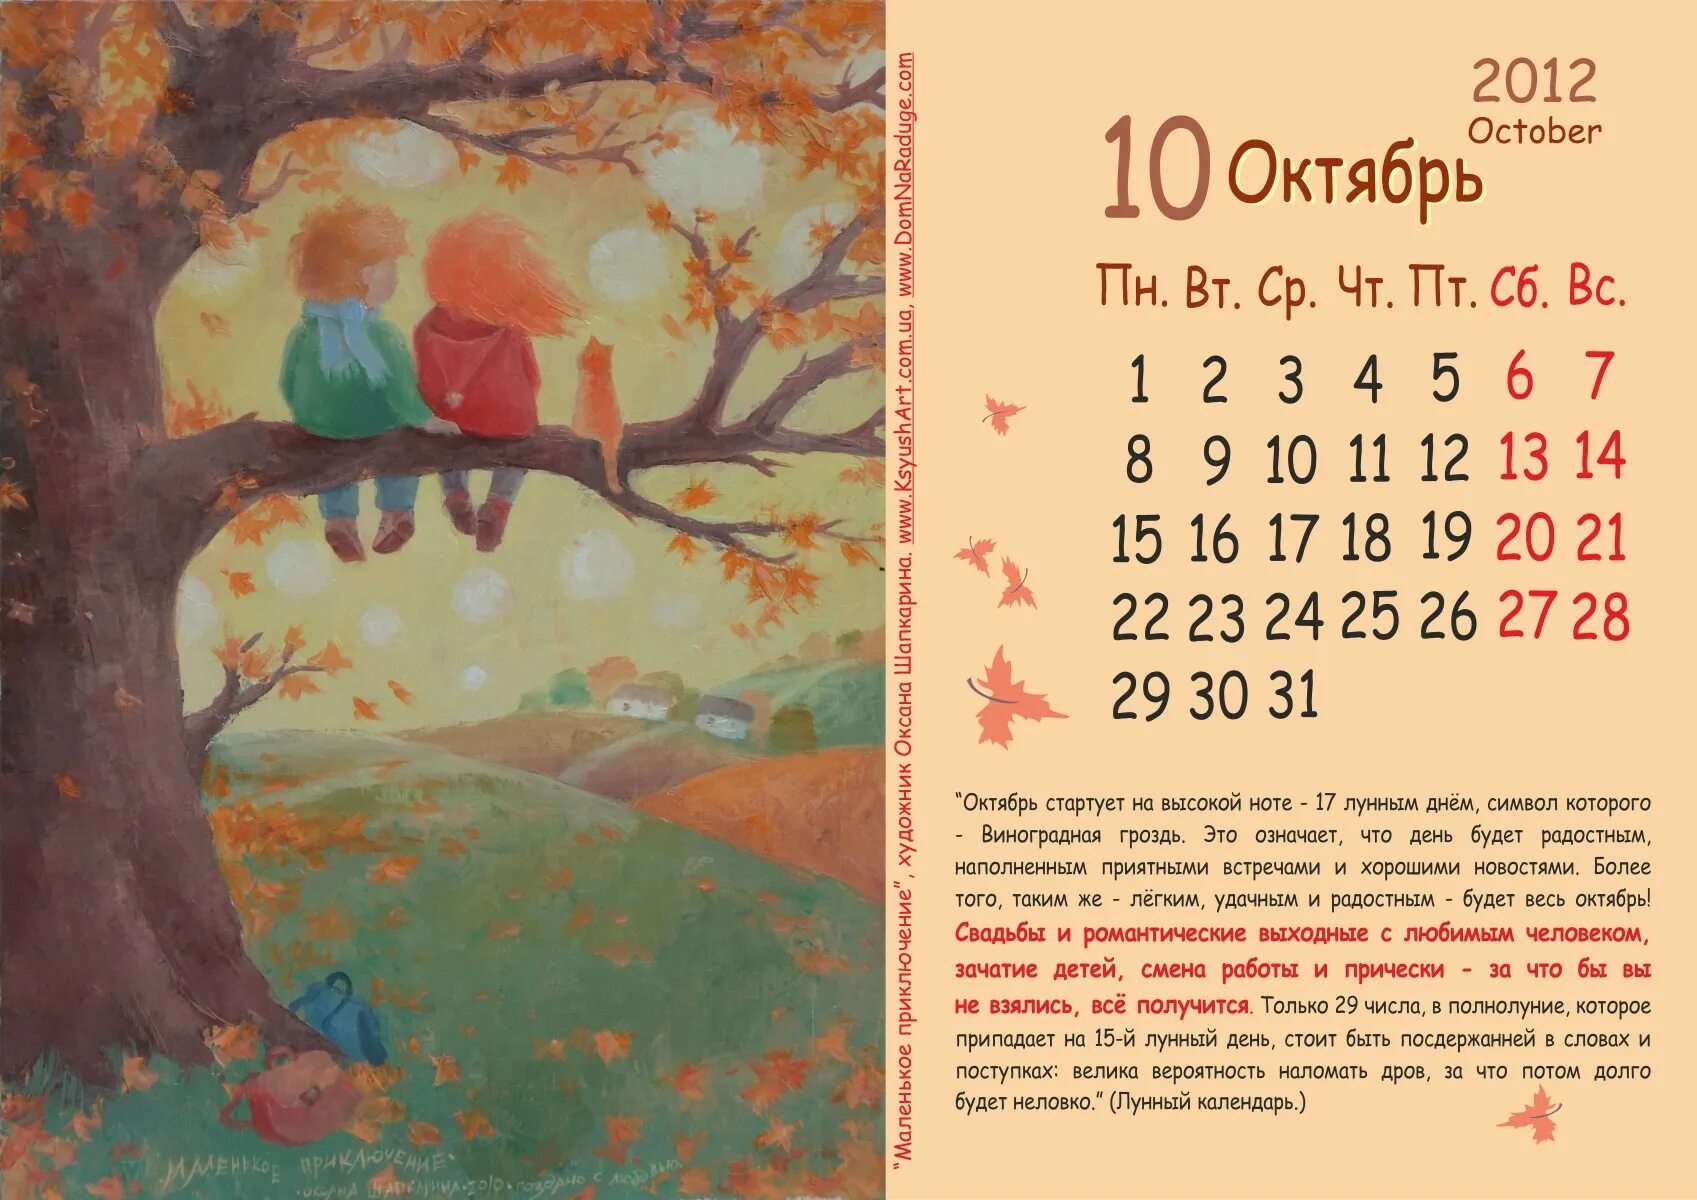 9 месяц календаря. Календарь октябрь. Календарь картинка. Календарь осень октябрь. Календарь с картинками на каждый месяц.